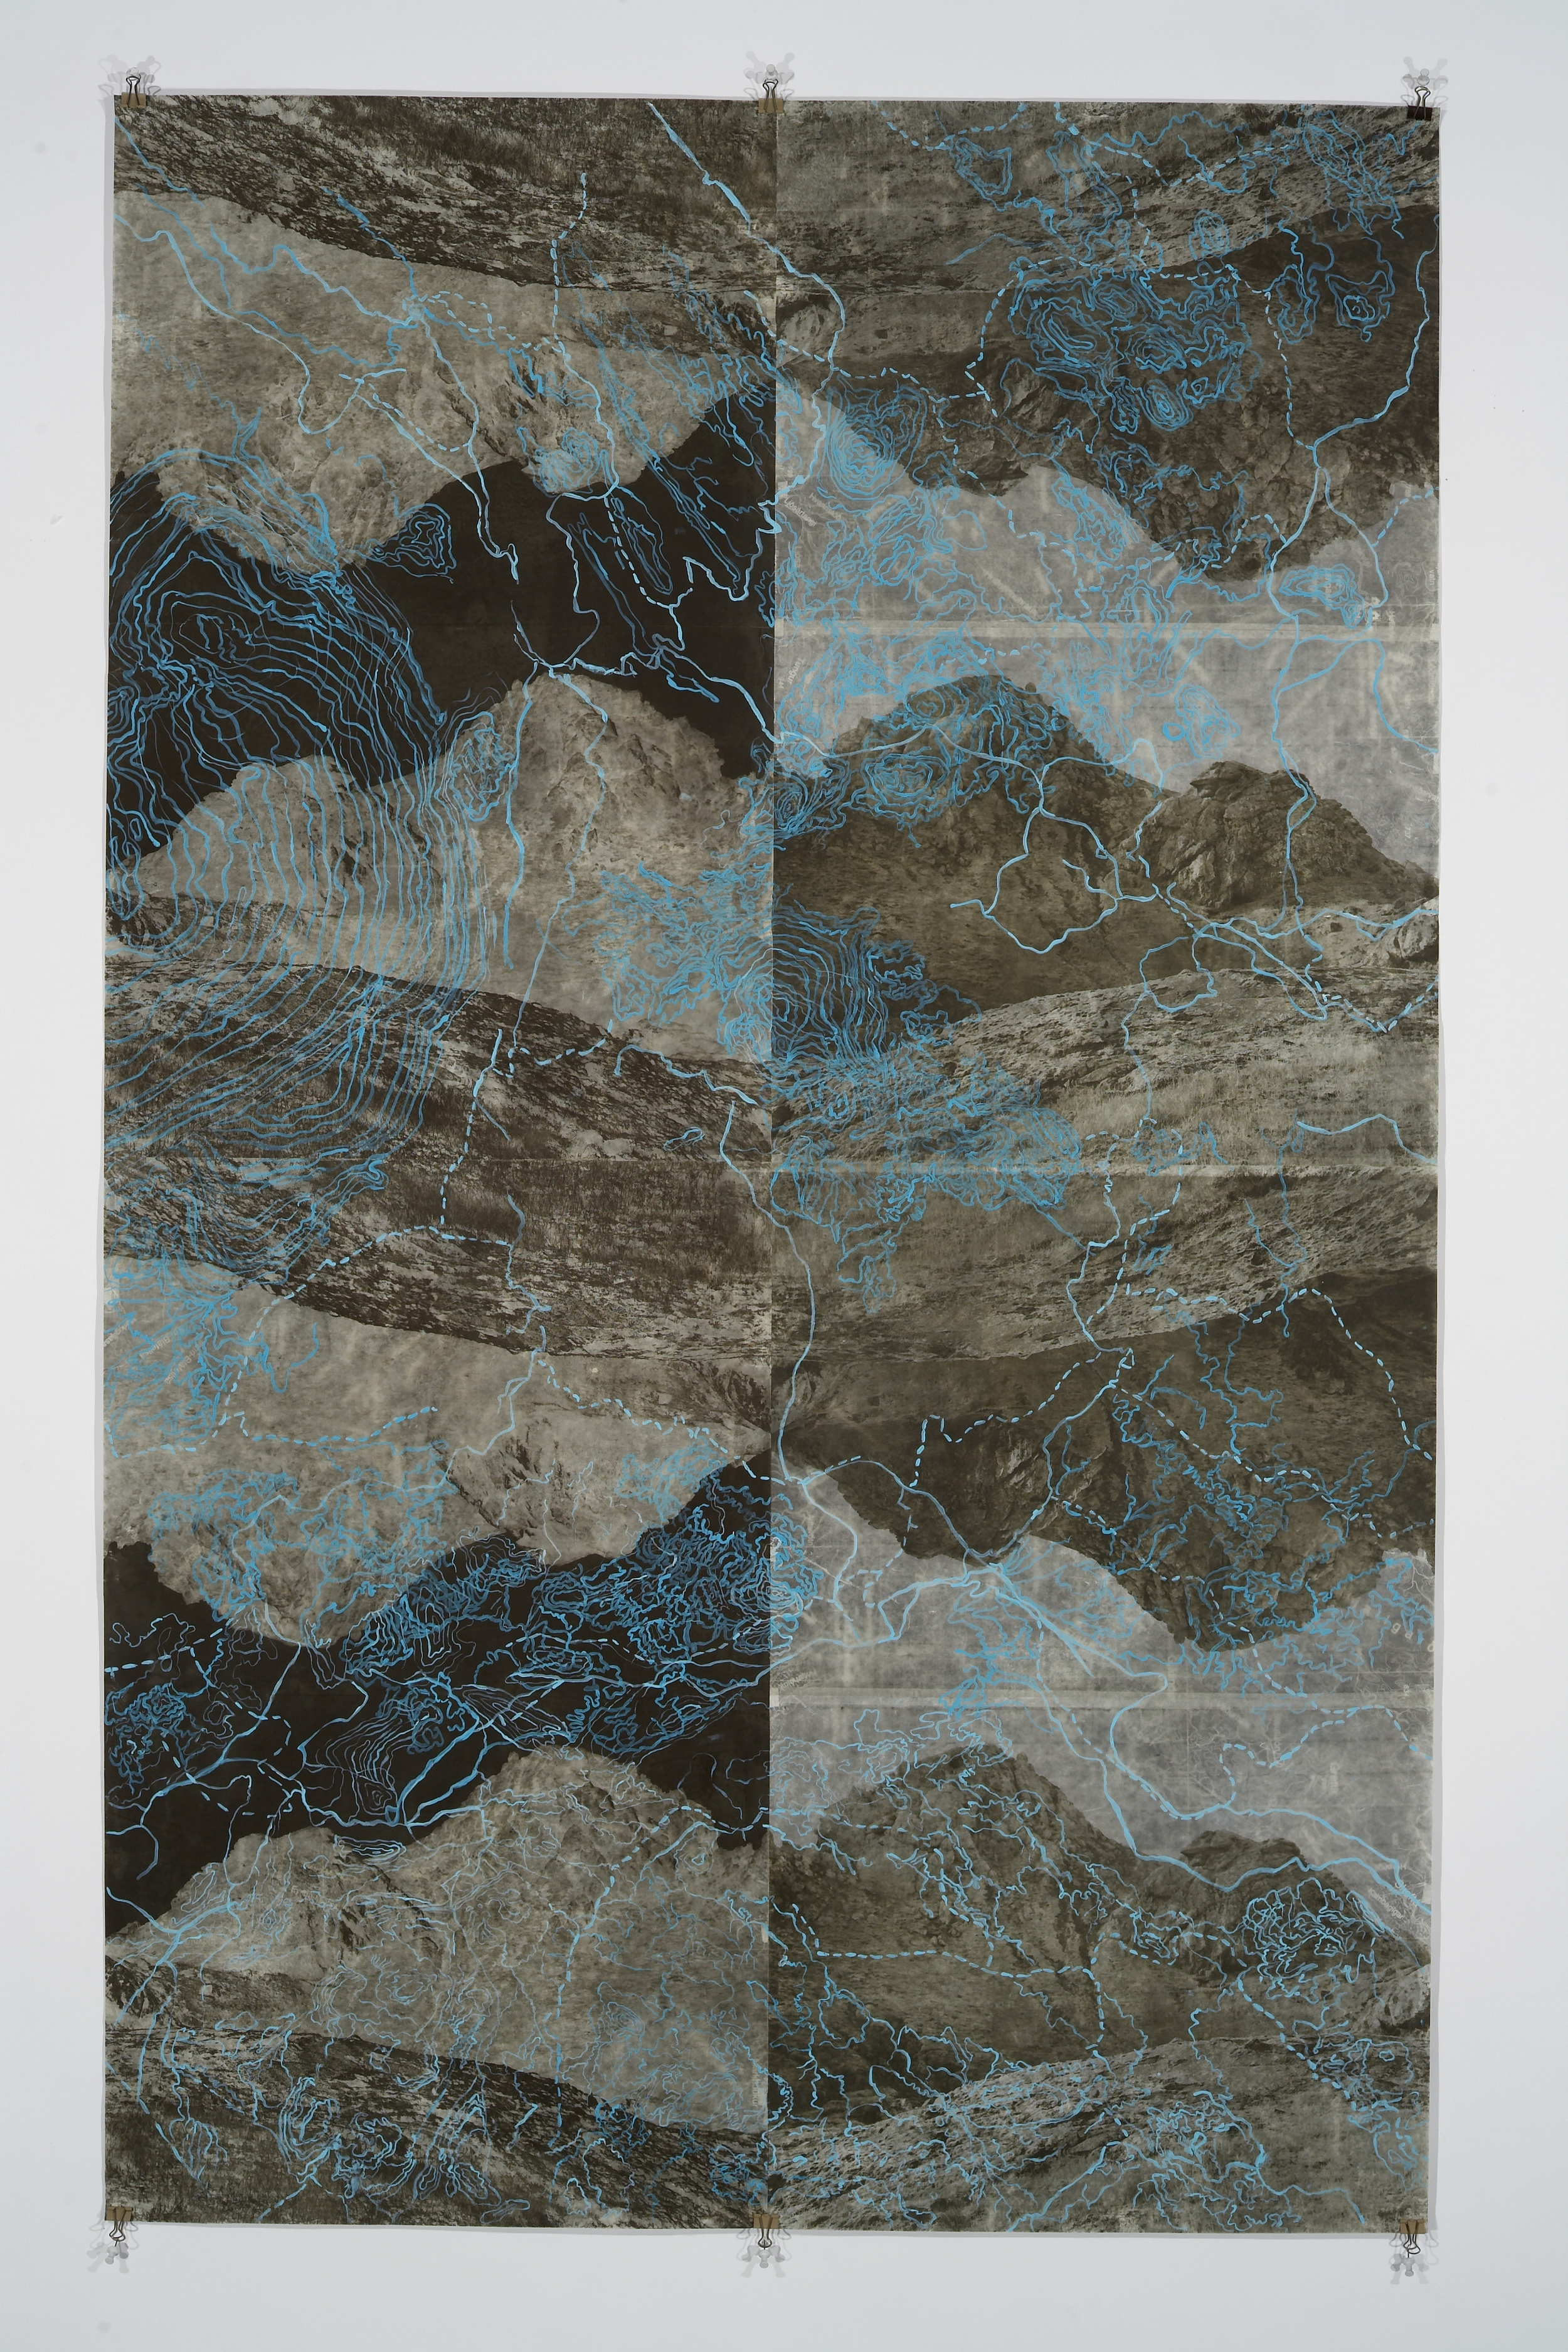    Eyjafjoll Scroll&nbsp;I, &nbsp;2006   Photogravure on kozo shi, digital pigment print, oil paint,&nbsp;wax in layers   65.5” X 41"  